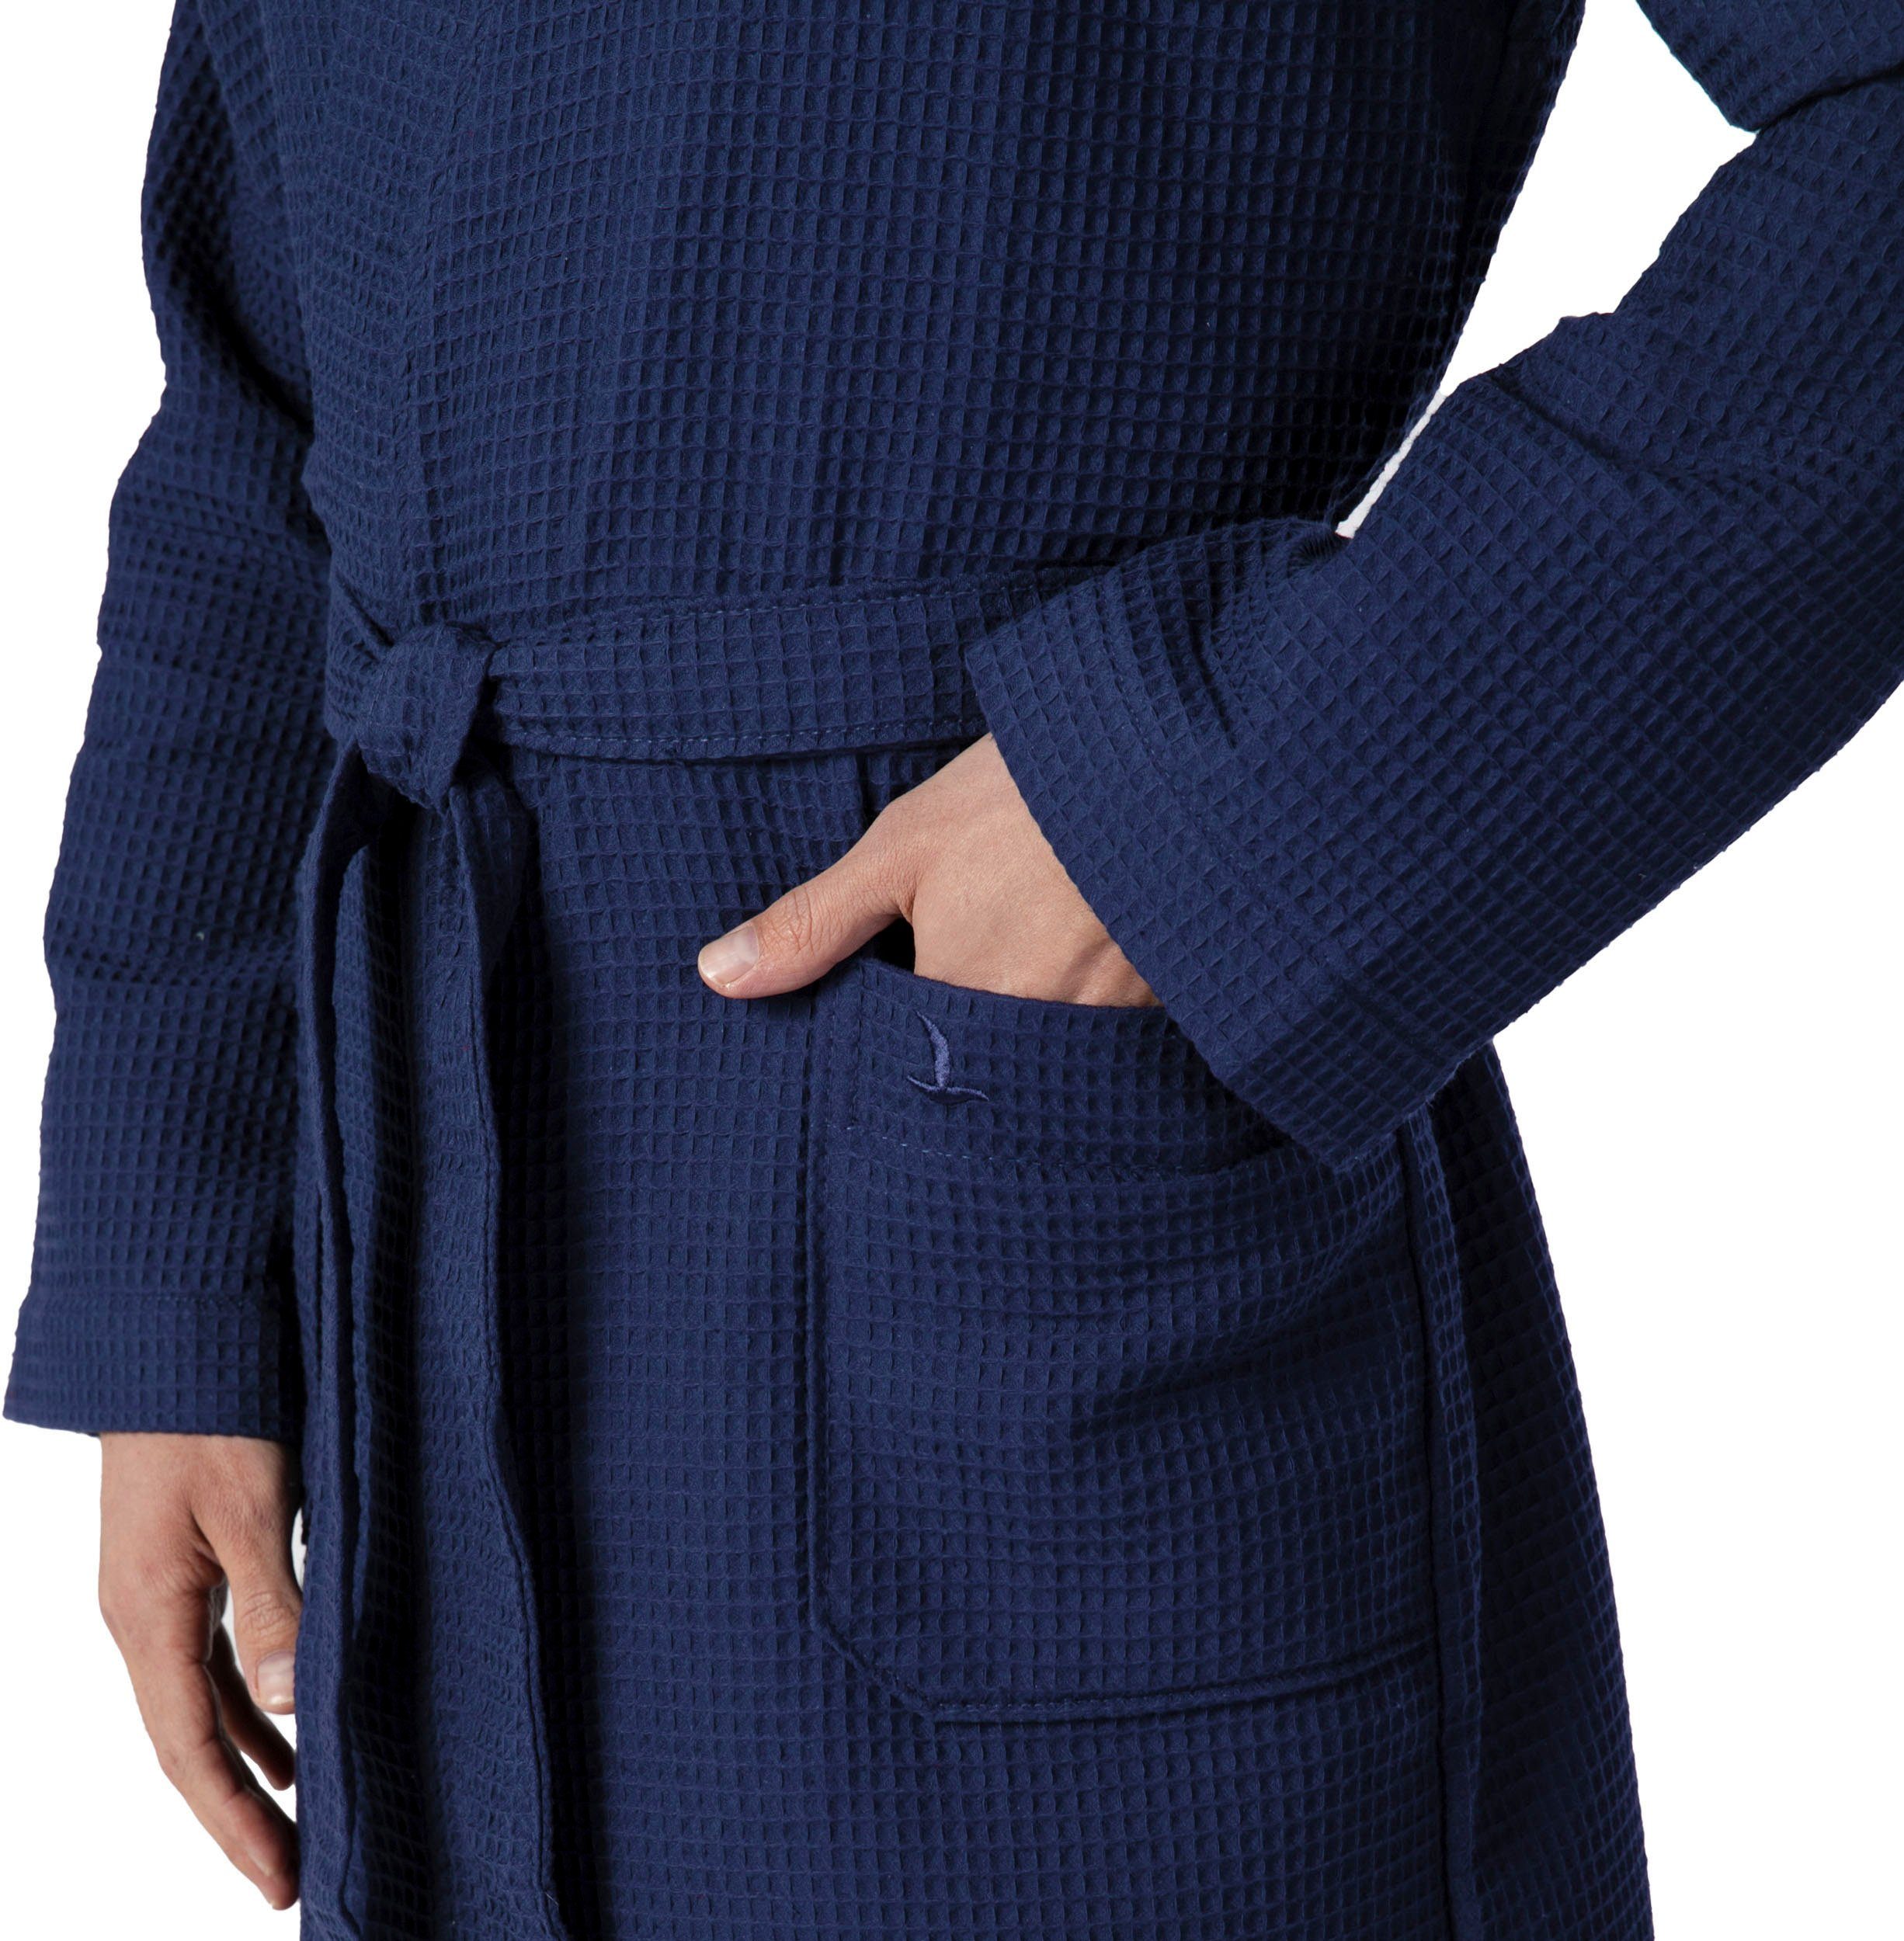 Piquée-Oberfläche Kimono-Kragen, Gürtel, Kimono Kurzform, Möve dunkelblau Homewear, Piqué,